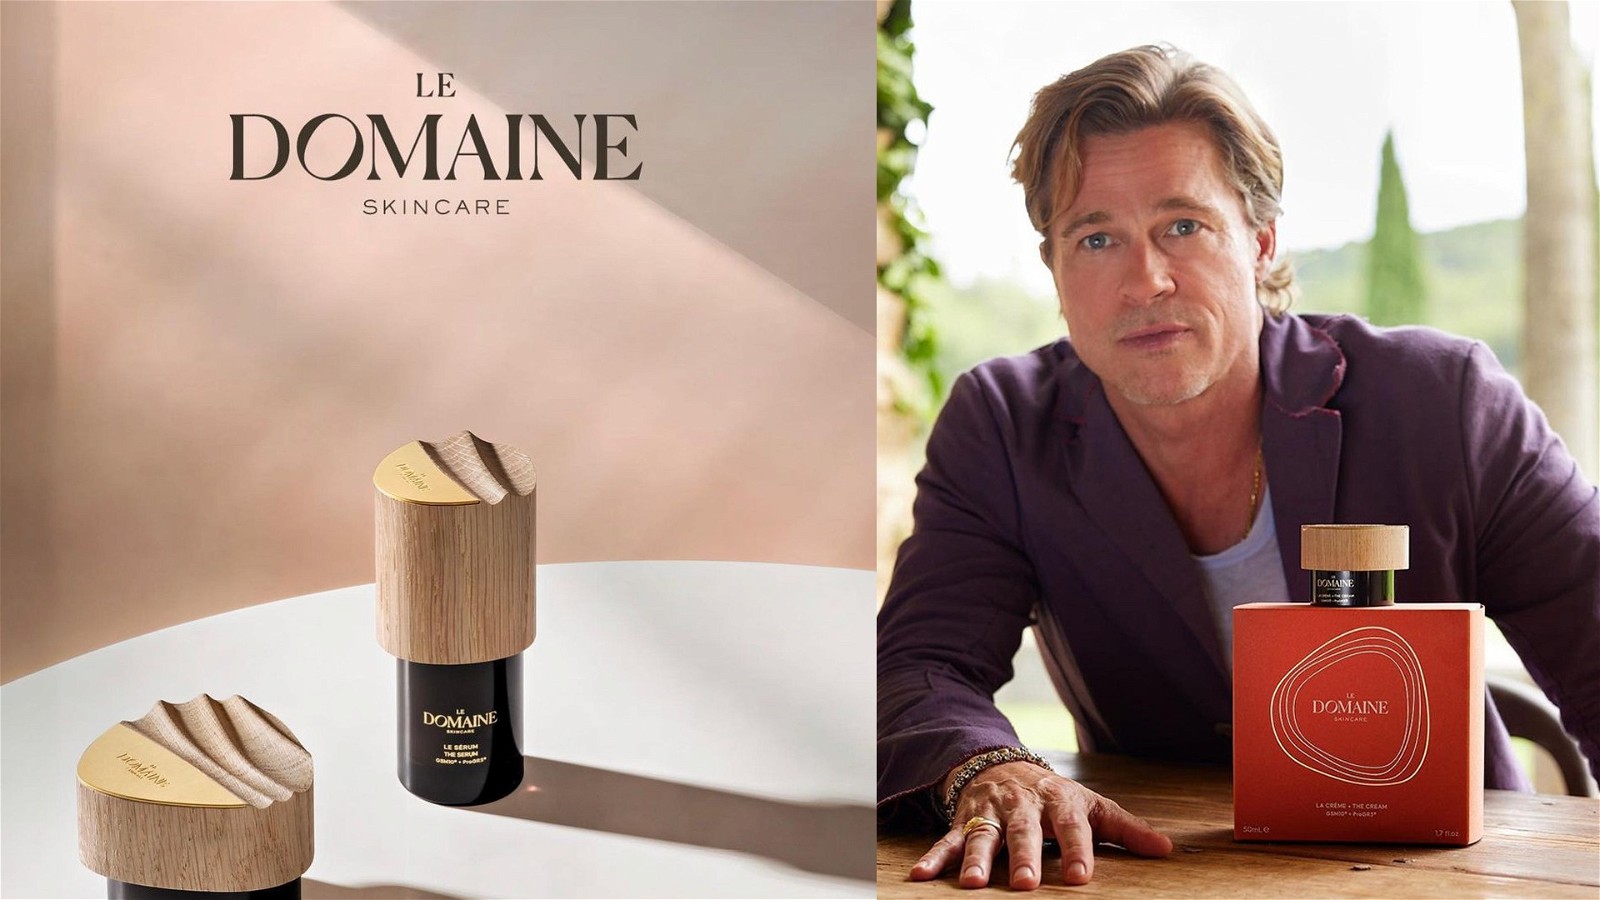 Brad Pitt launches Le Domaine